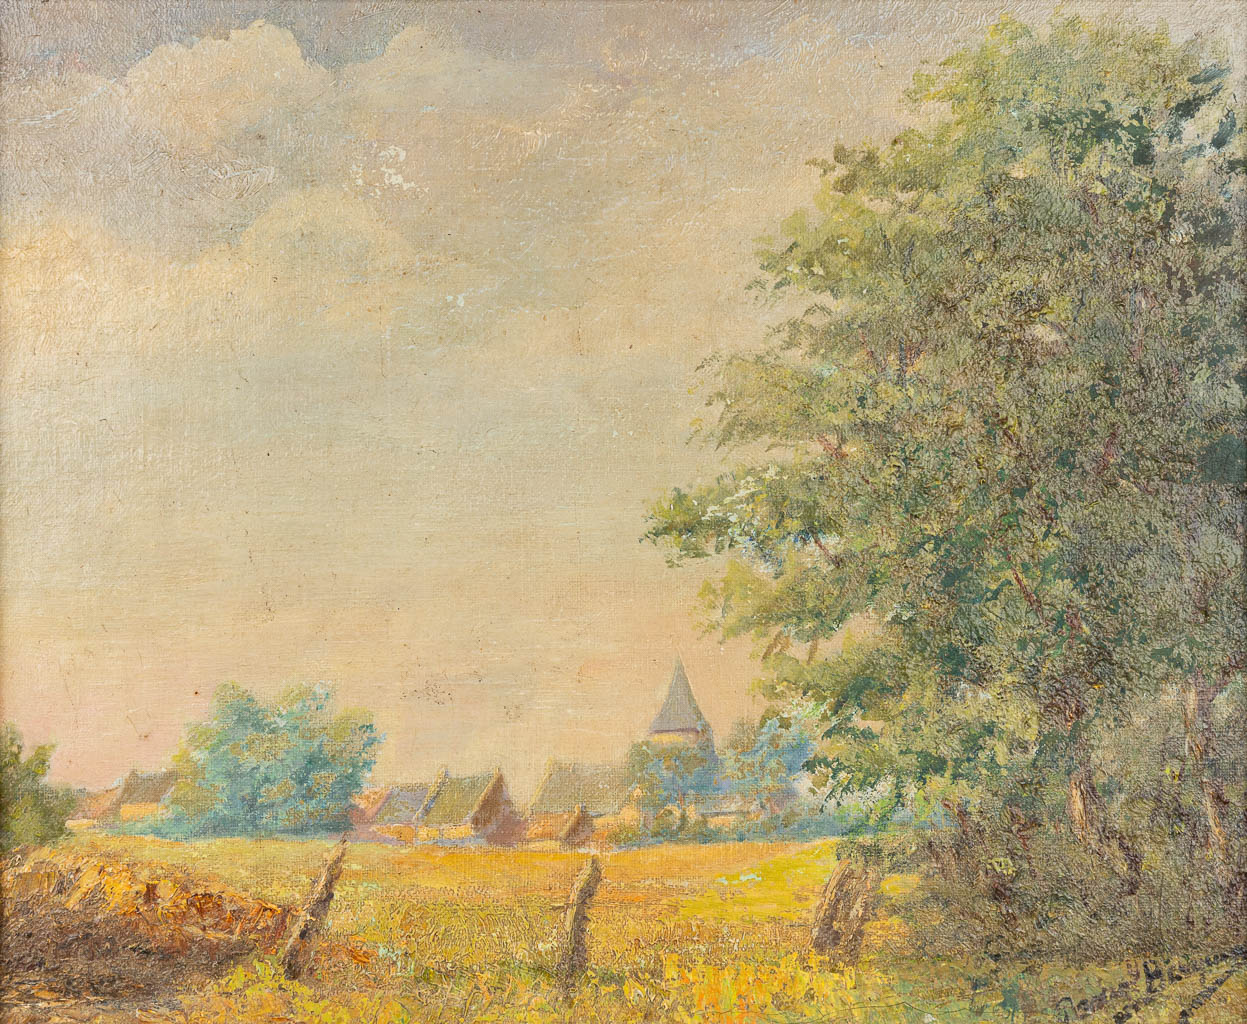 R. BERQUIN (XIX-XX) 'Vue sur le village', a painting, oil on canvas. 1926. (47 x 37 cm)